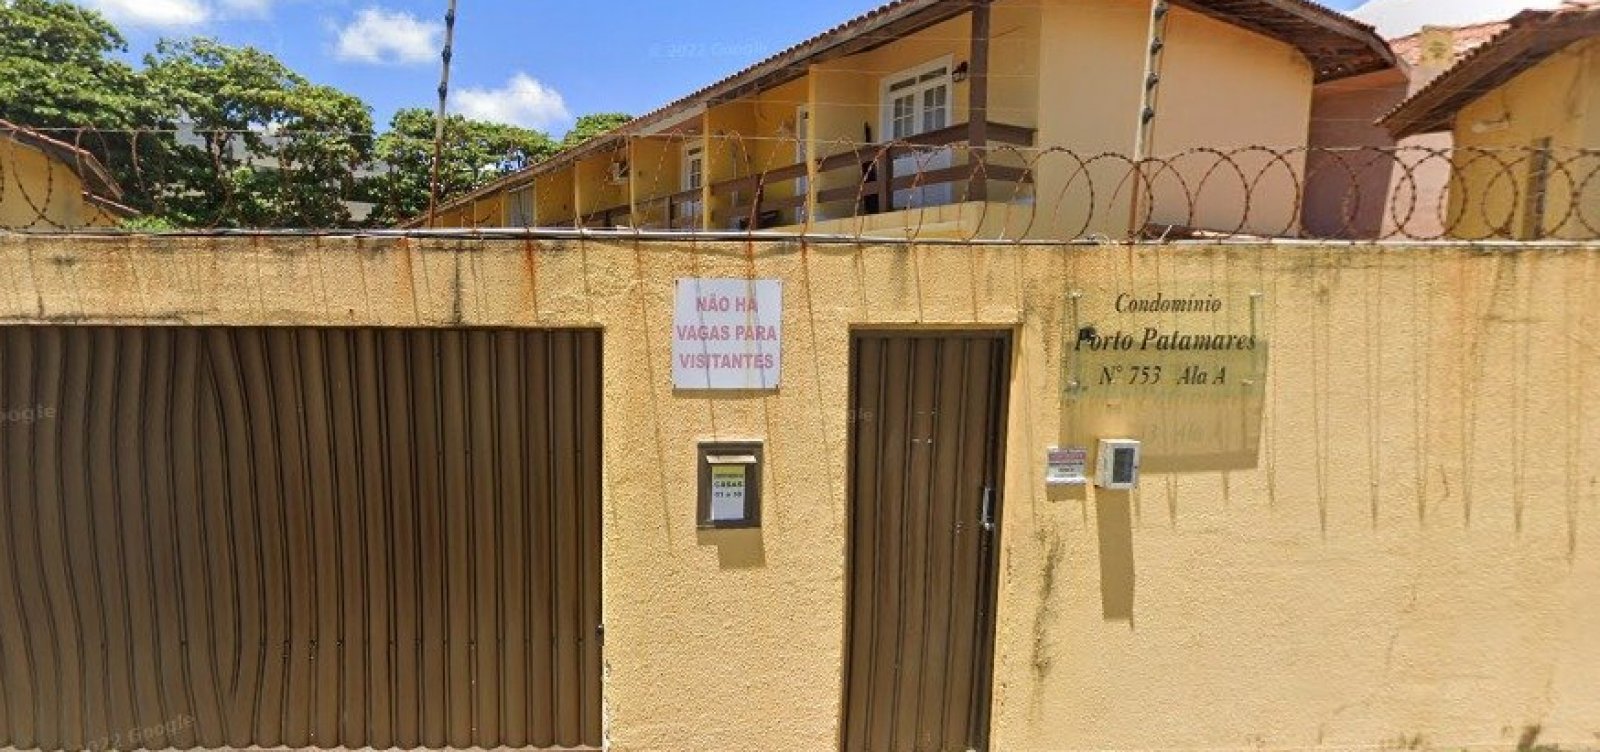 Homens trocam tiros em condomínio de Salvador